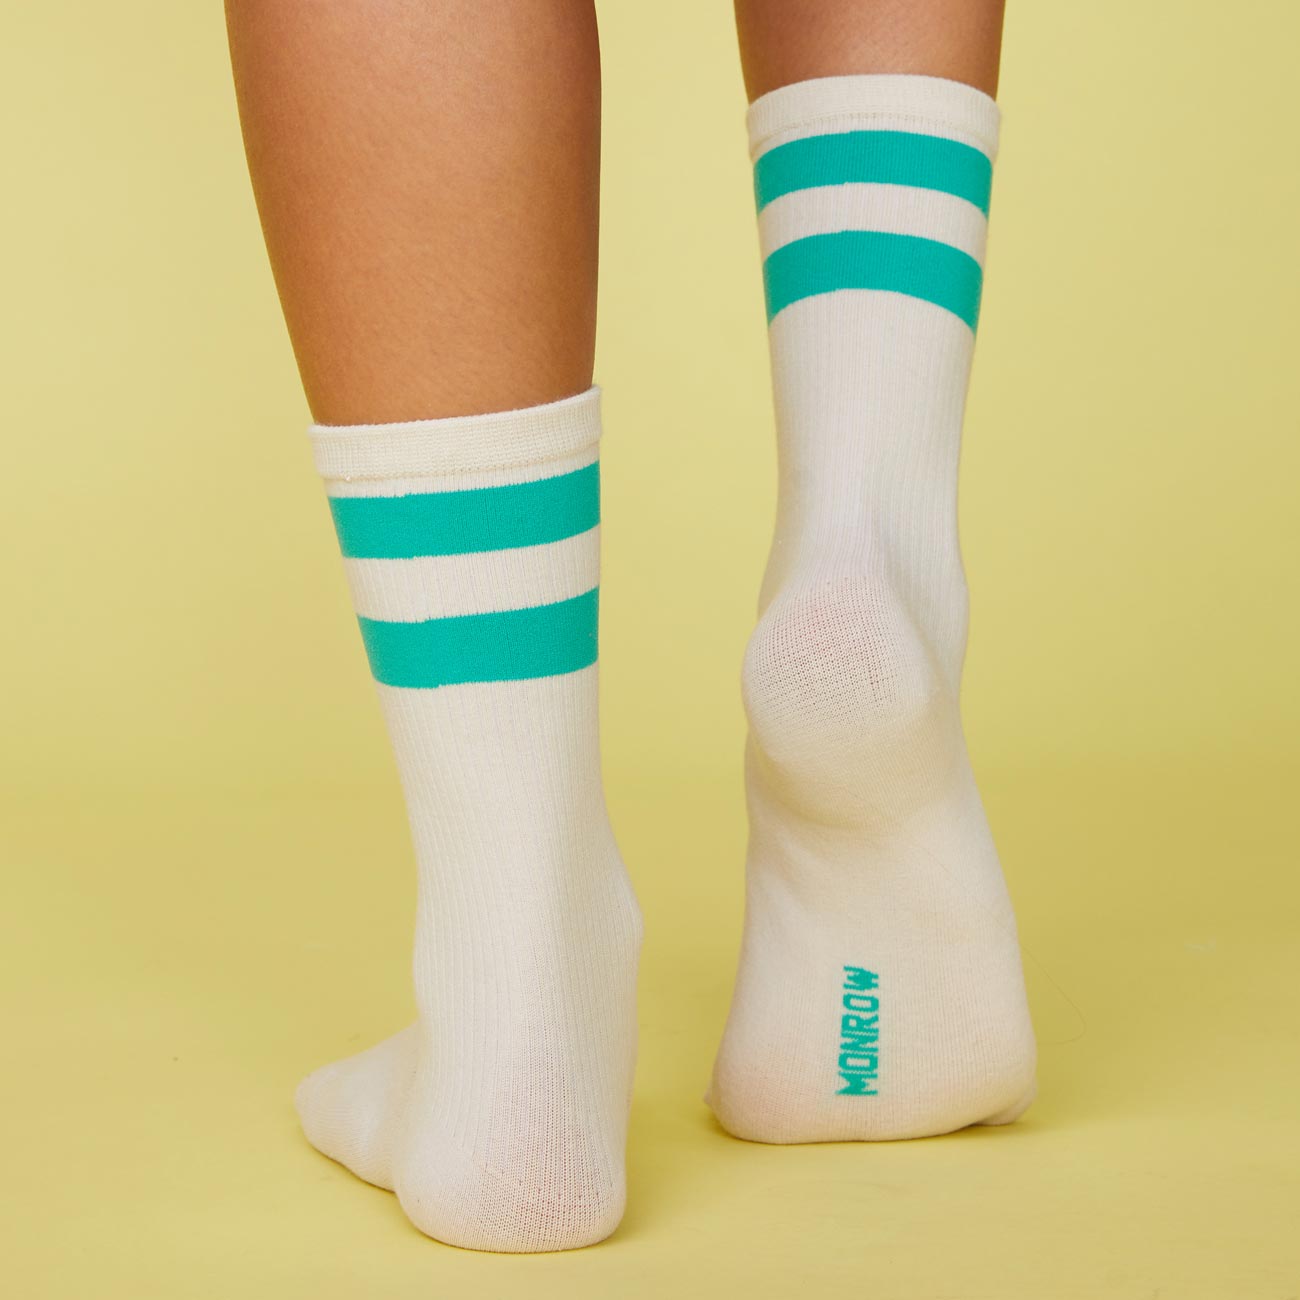 Back view of model's feet wearing the stripe socks in peacock green.